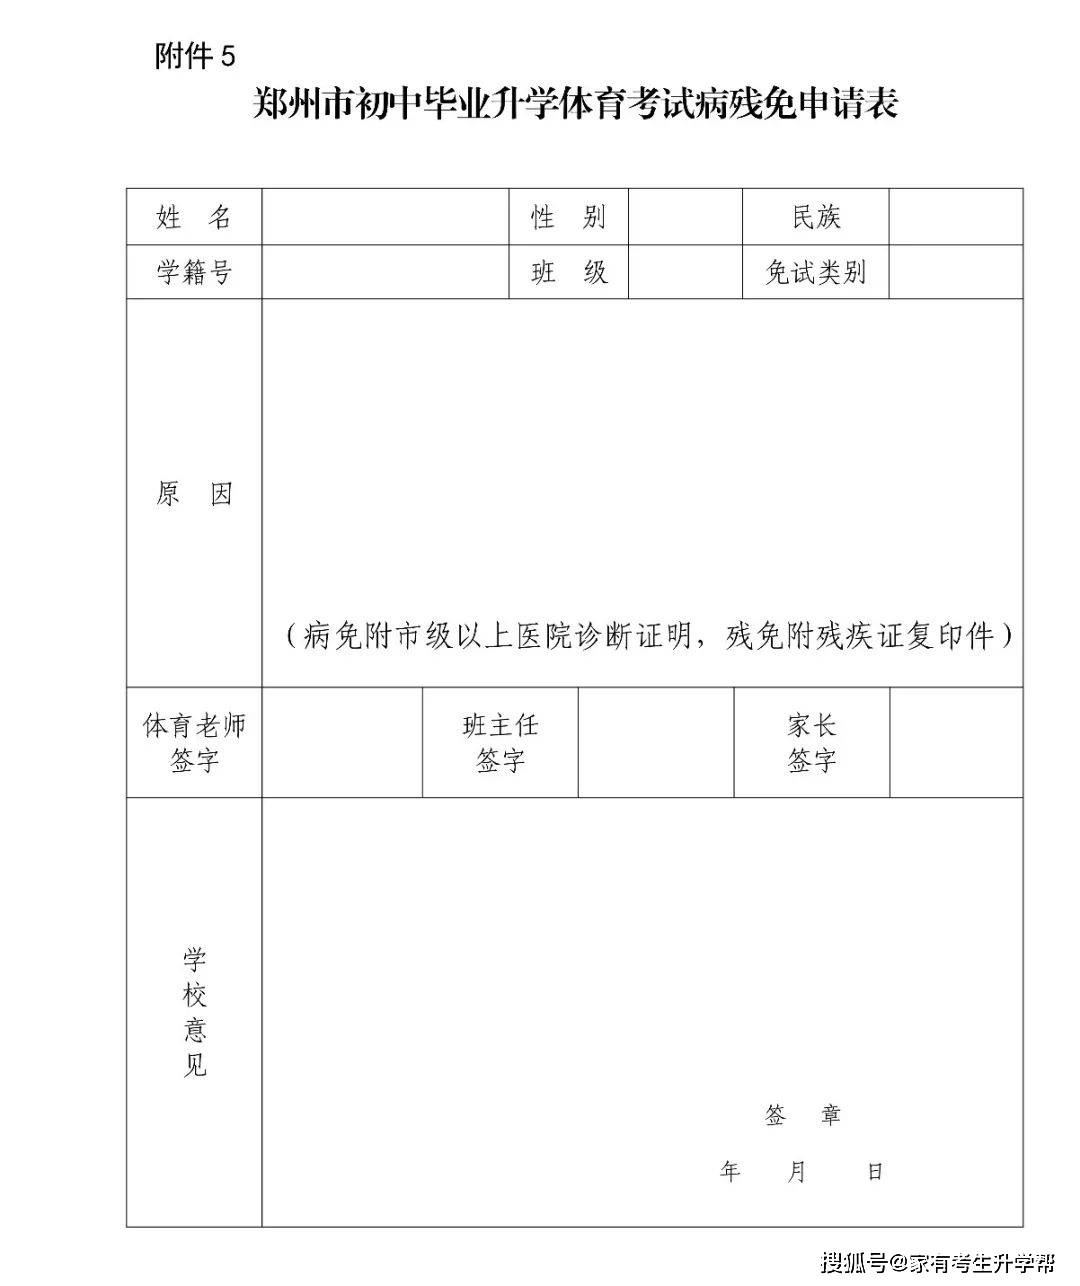 【最近上次】郑州中招体育考试考点日程明细表,注意事项及考点线路图!